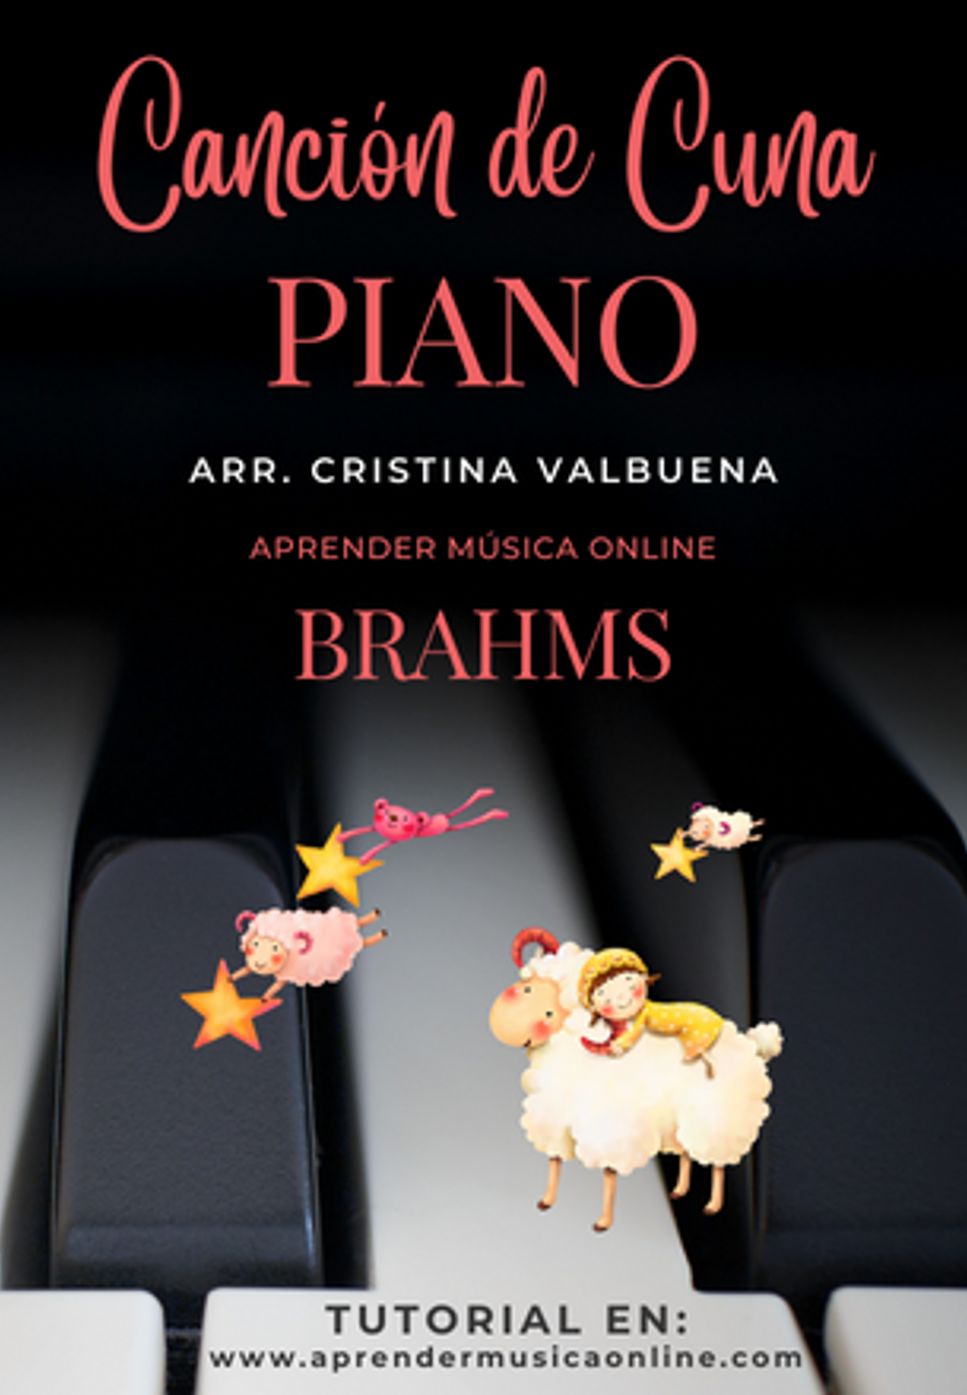 Brahms - Canción de cuna by Cristina Valbuena